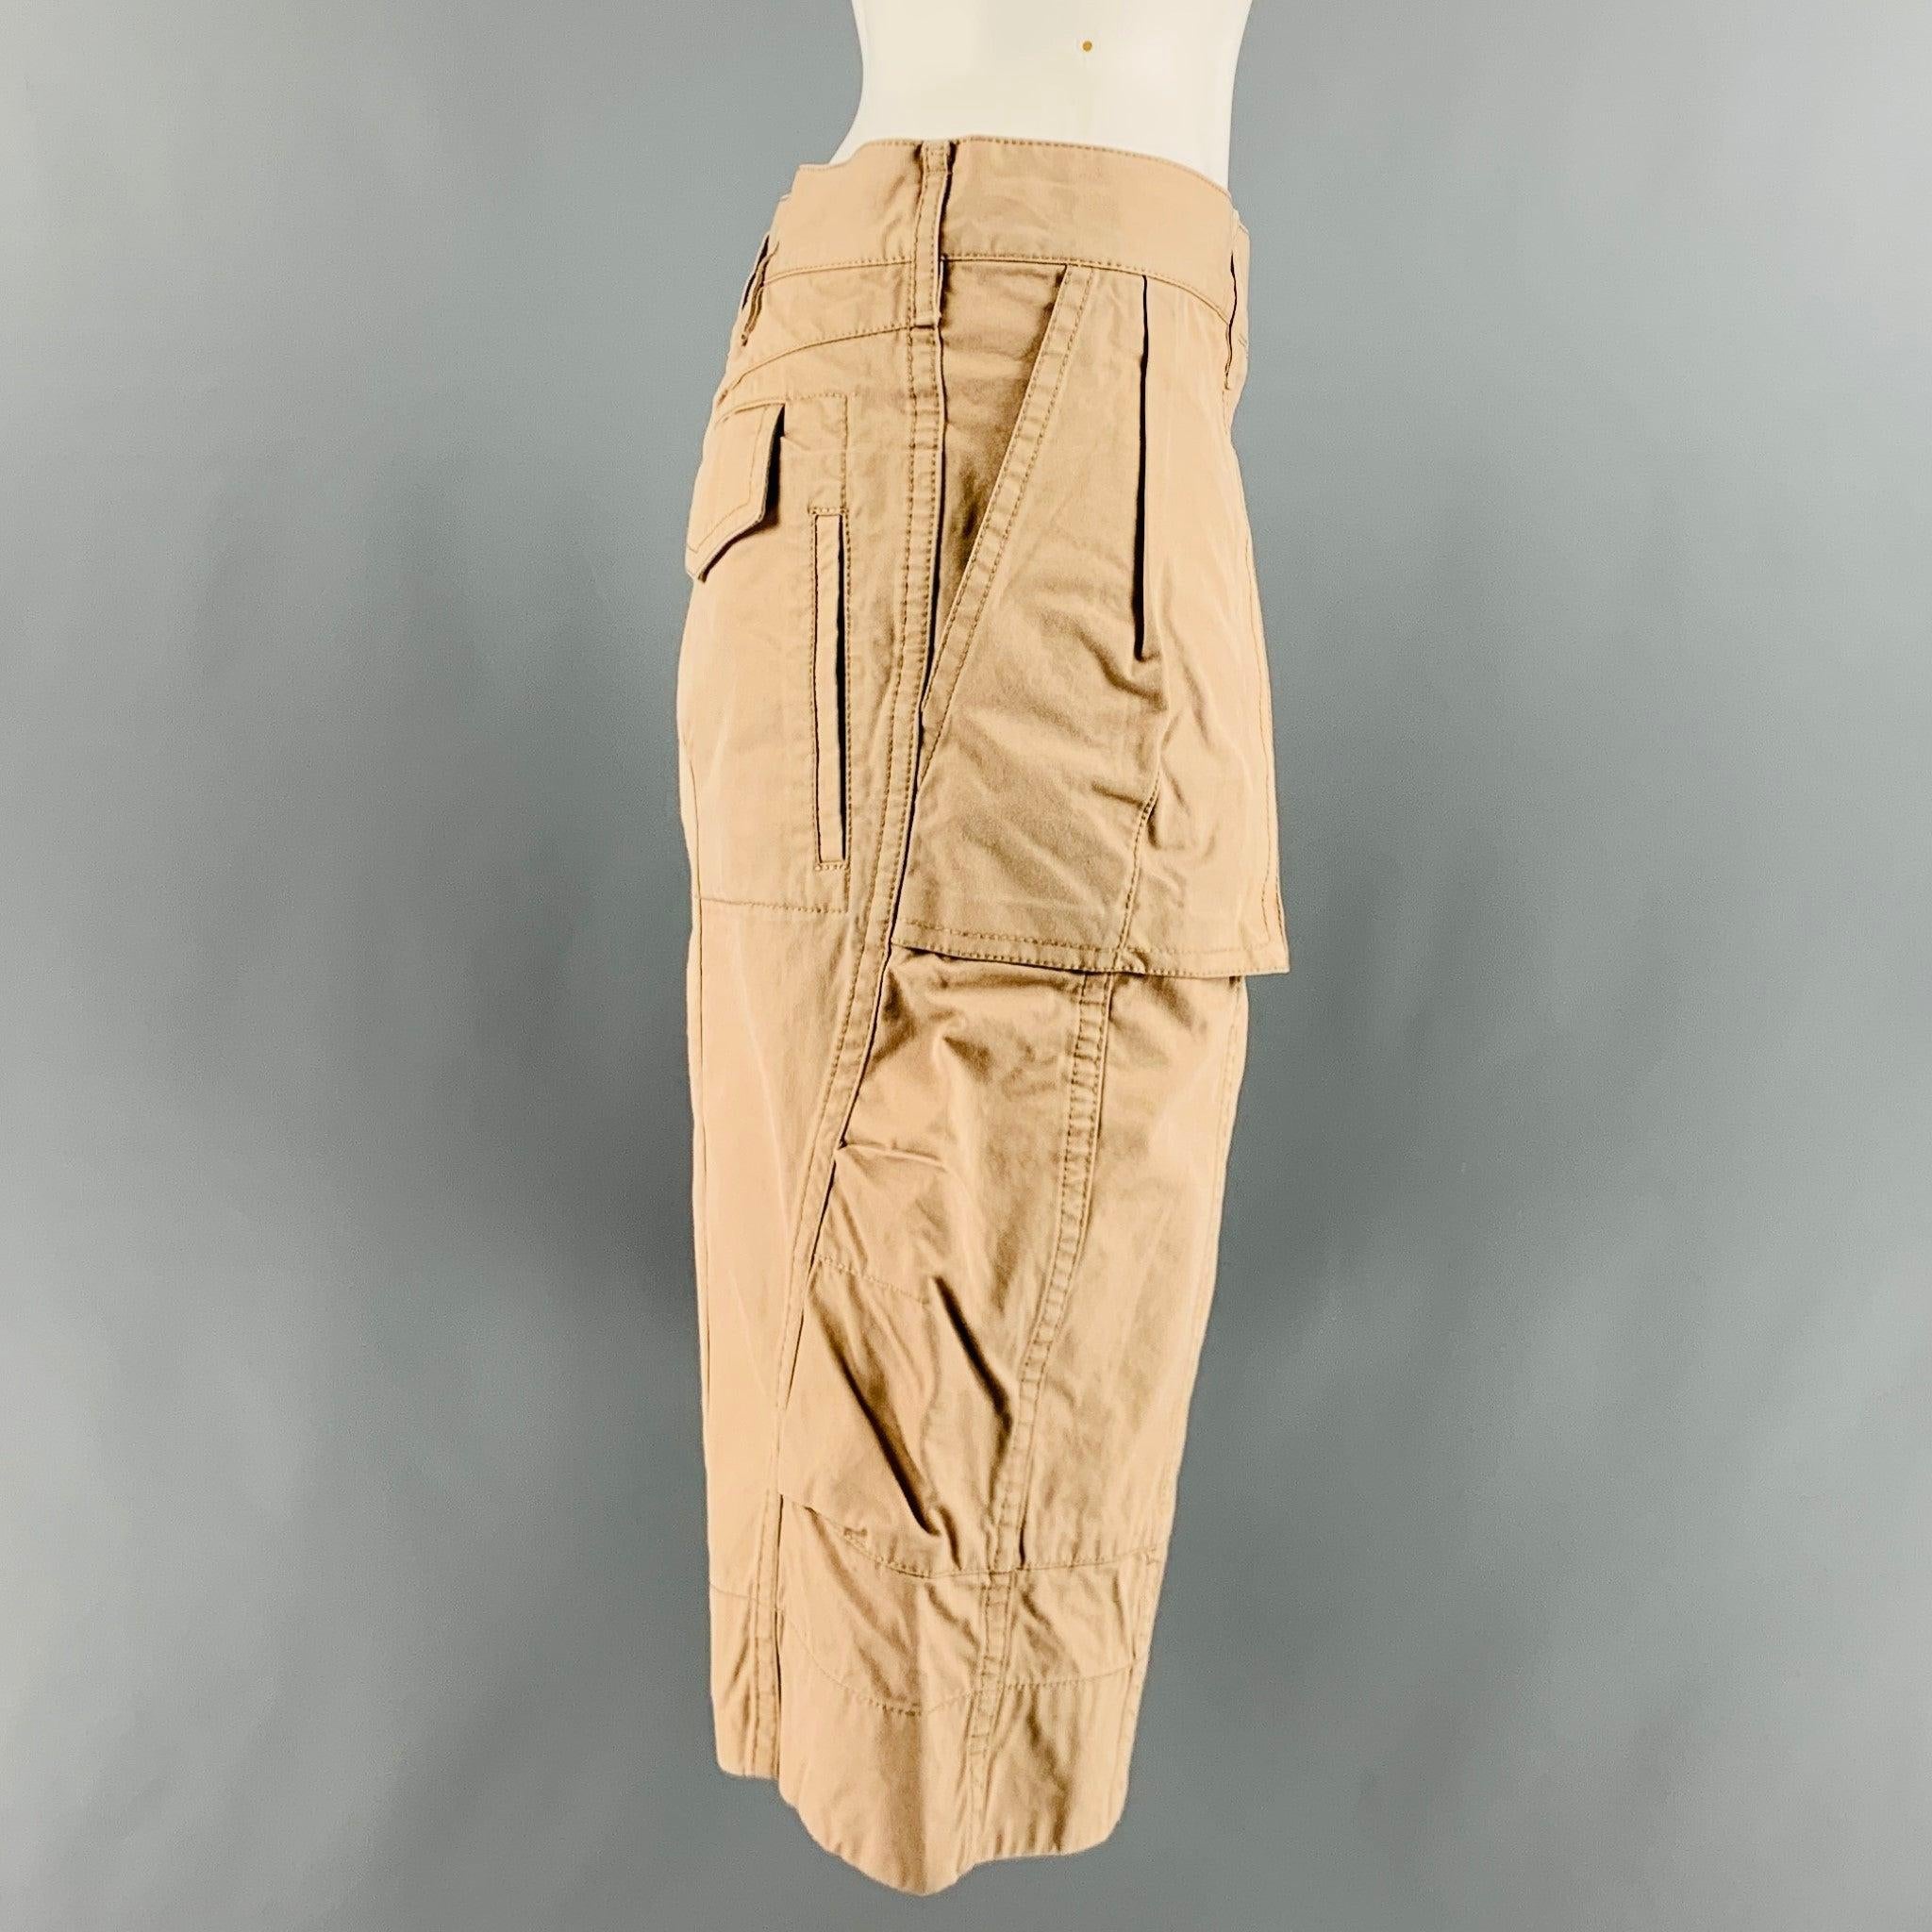 MARC JACOBS Shorts aus beiger Baumwolle mit übergroßem Utility-Stil, Schlitztaschen, Reißverschluss und doppeltem Laschenverschluss vorne. Made in USA.Excellent Pre-Owned Condition. 

Markiert:   10 

Abmessungen: 
  Taille: 37 Zoll Anstieg: 8,5